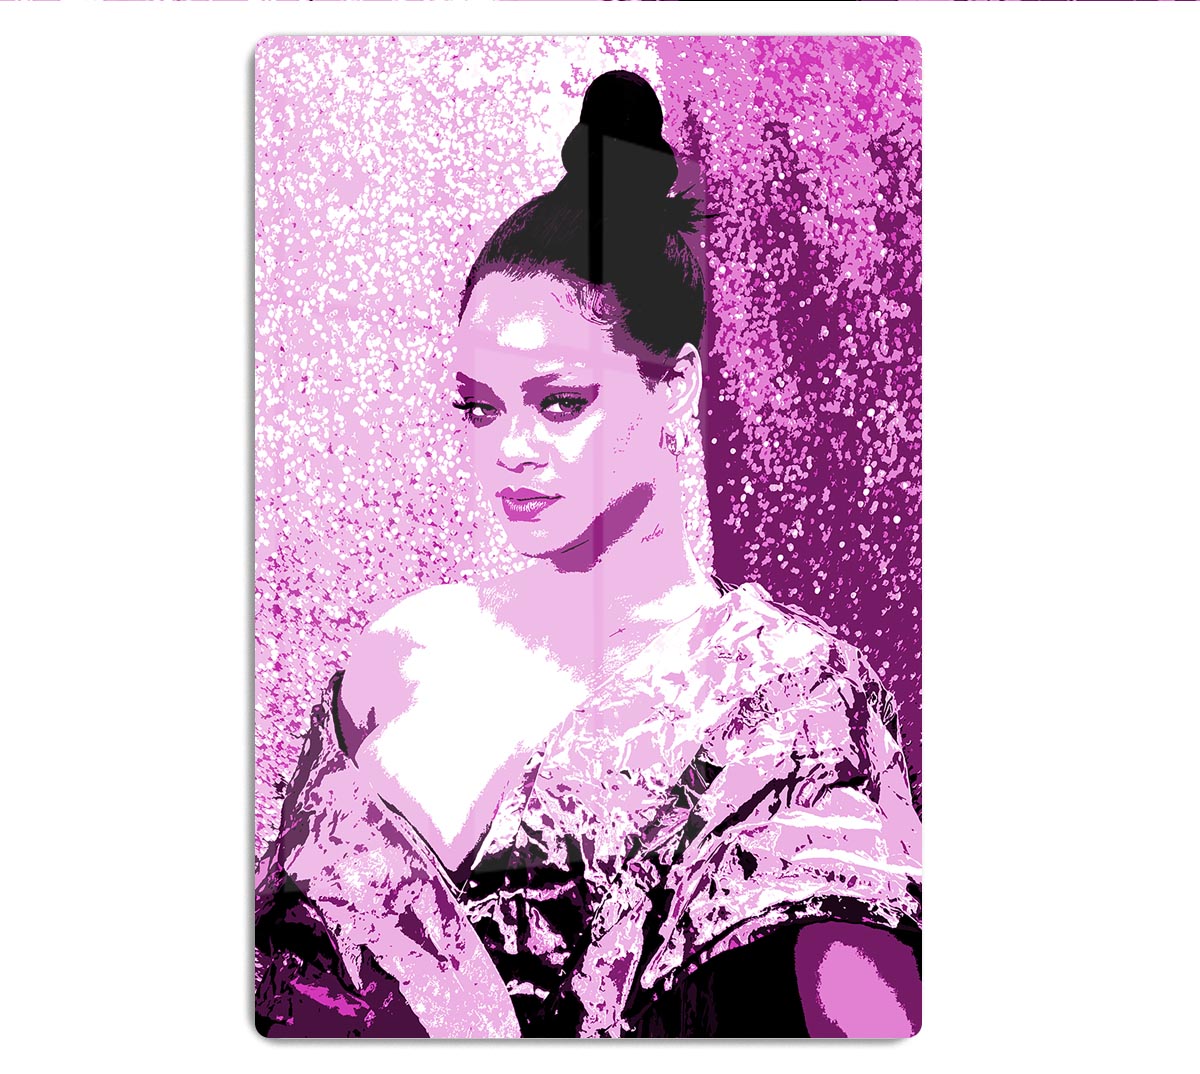 Rihanna Purple Pop Art HD Metal Print